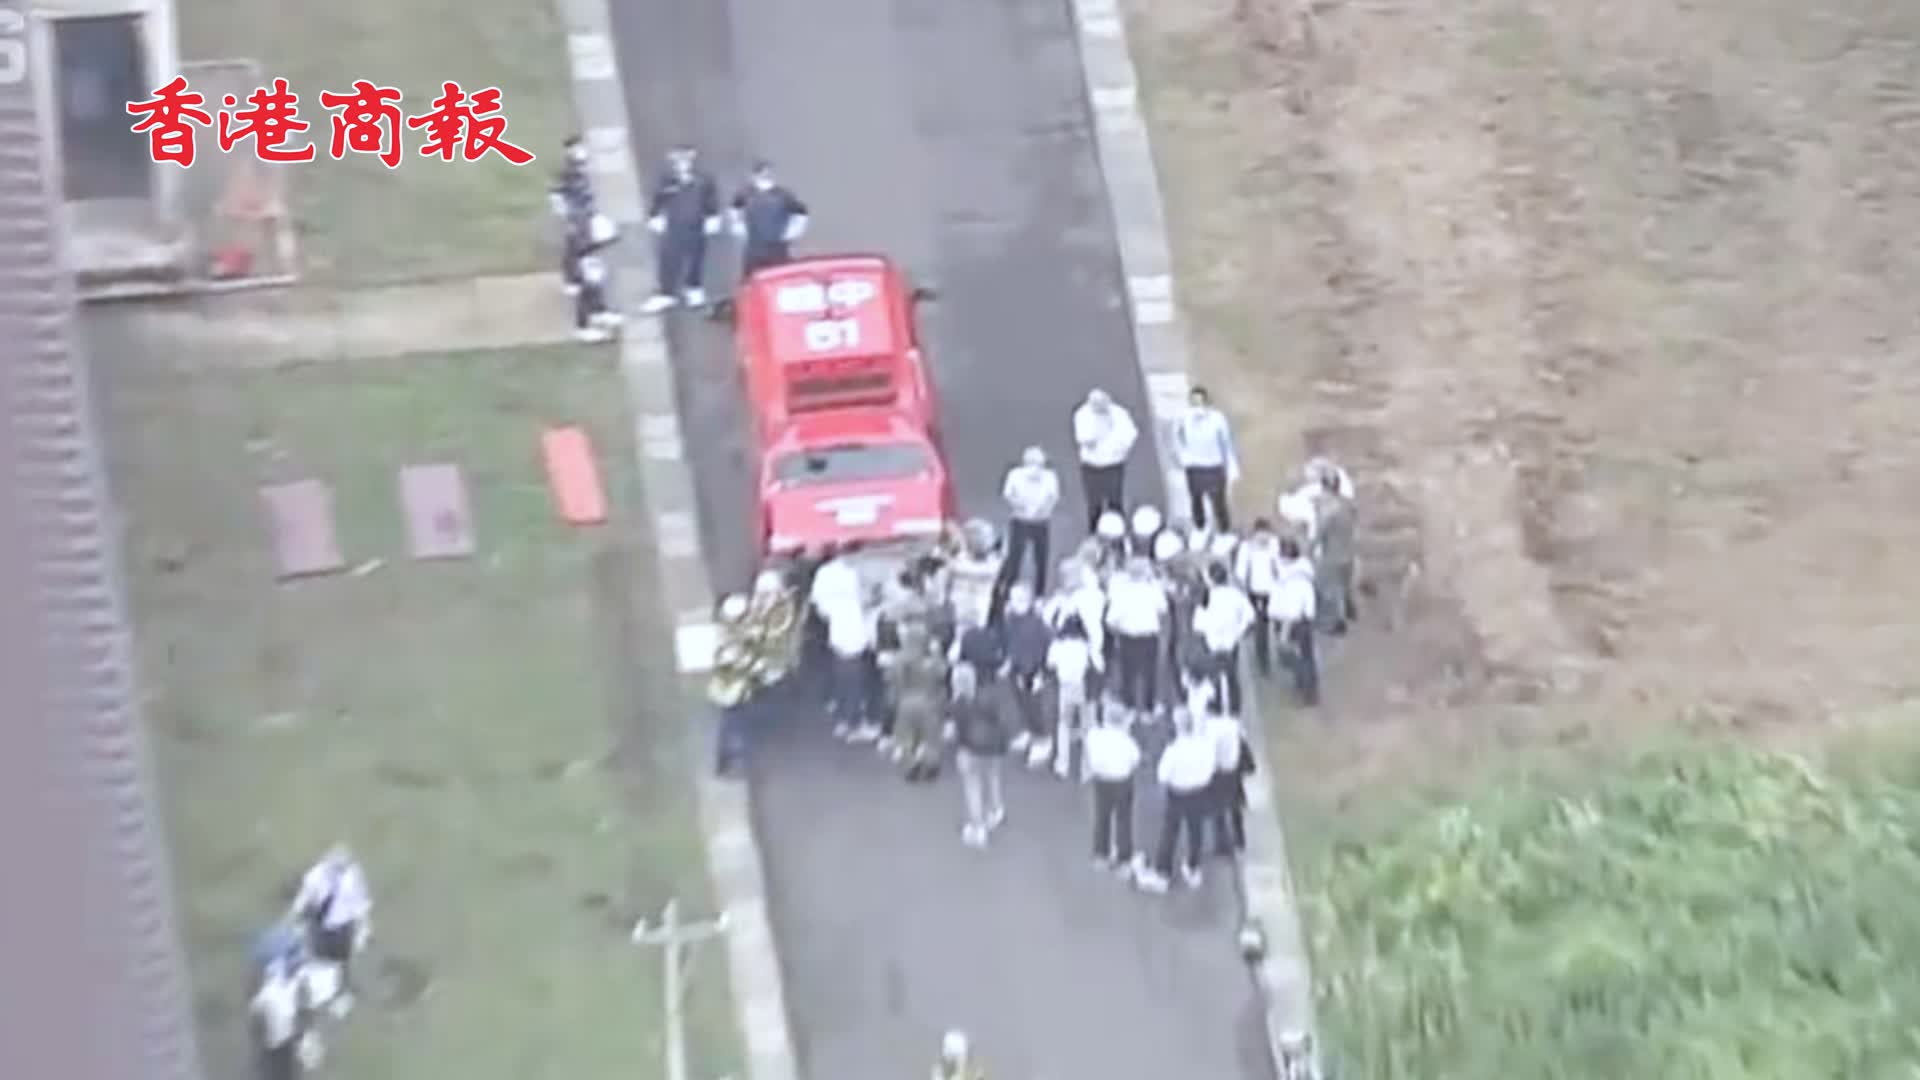 有片 | 日本陸上自衛隊射擊場發生槍擊事件 已有一名傷者死亡 嫌疑人被捕